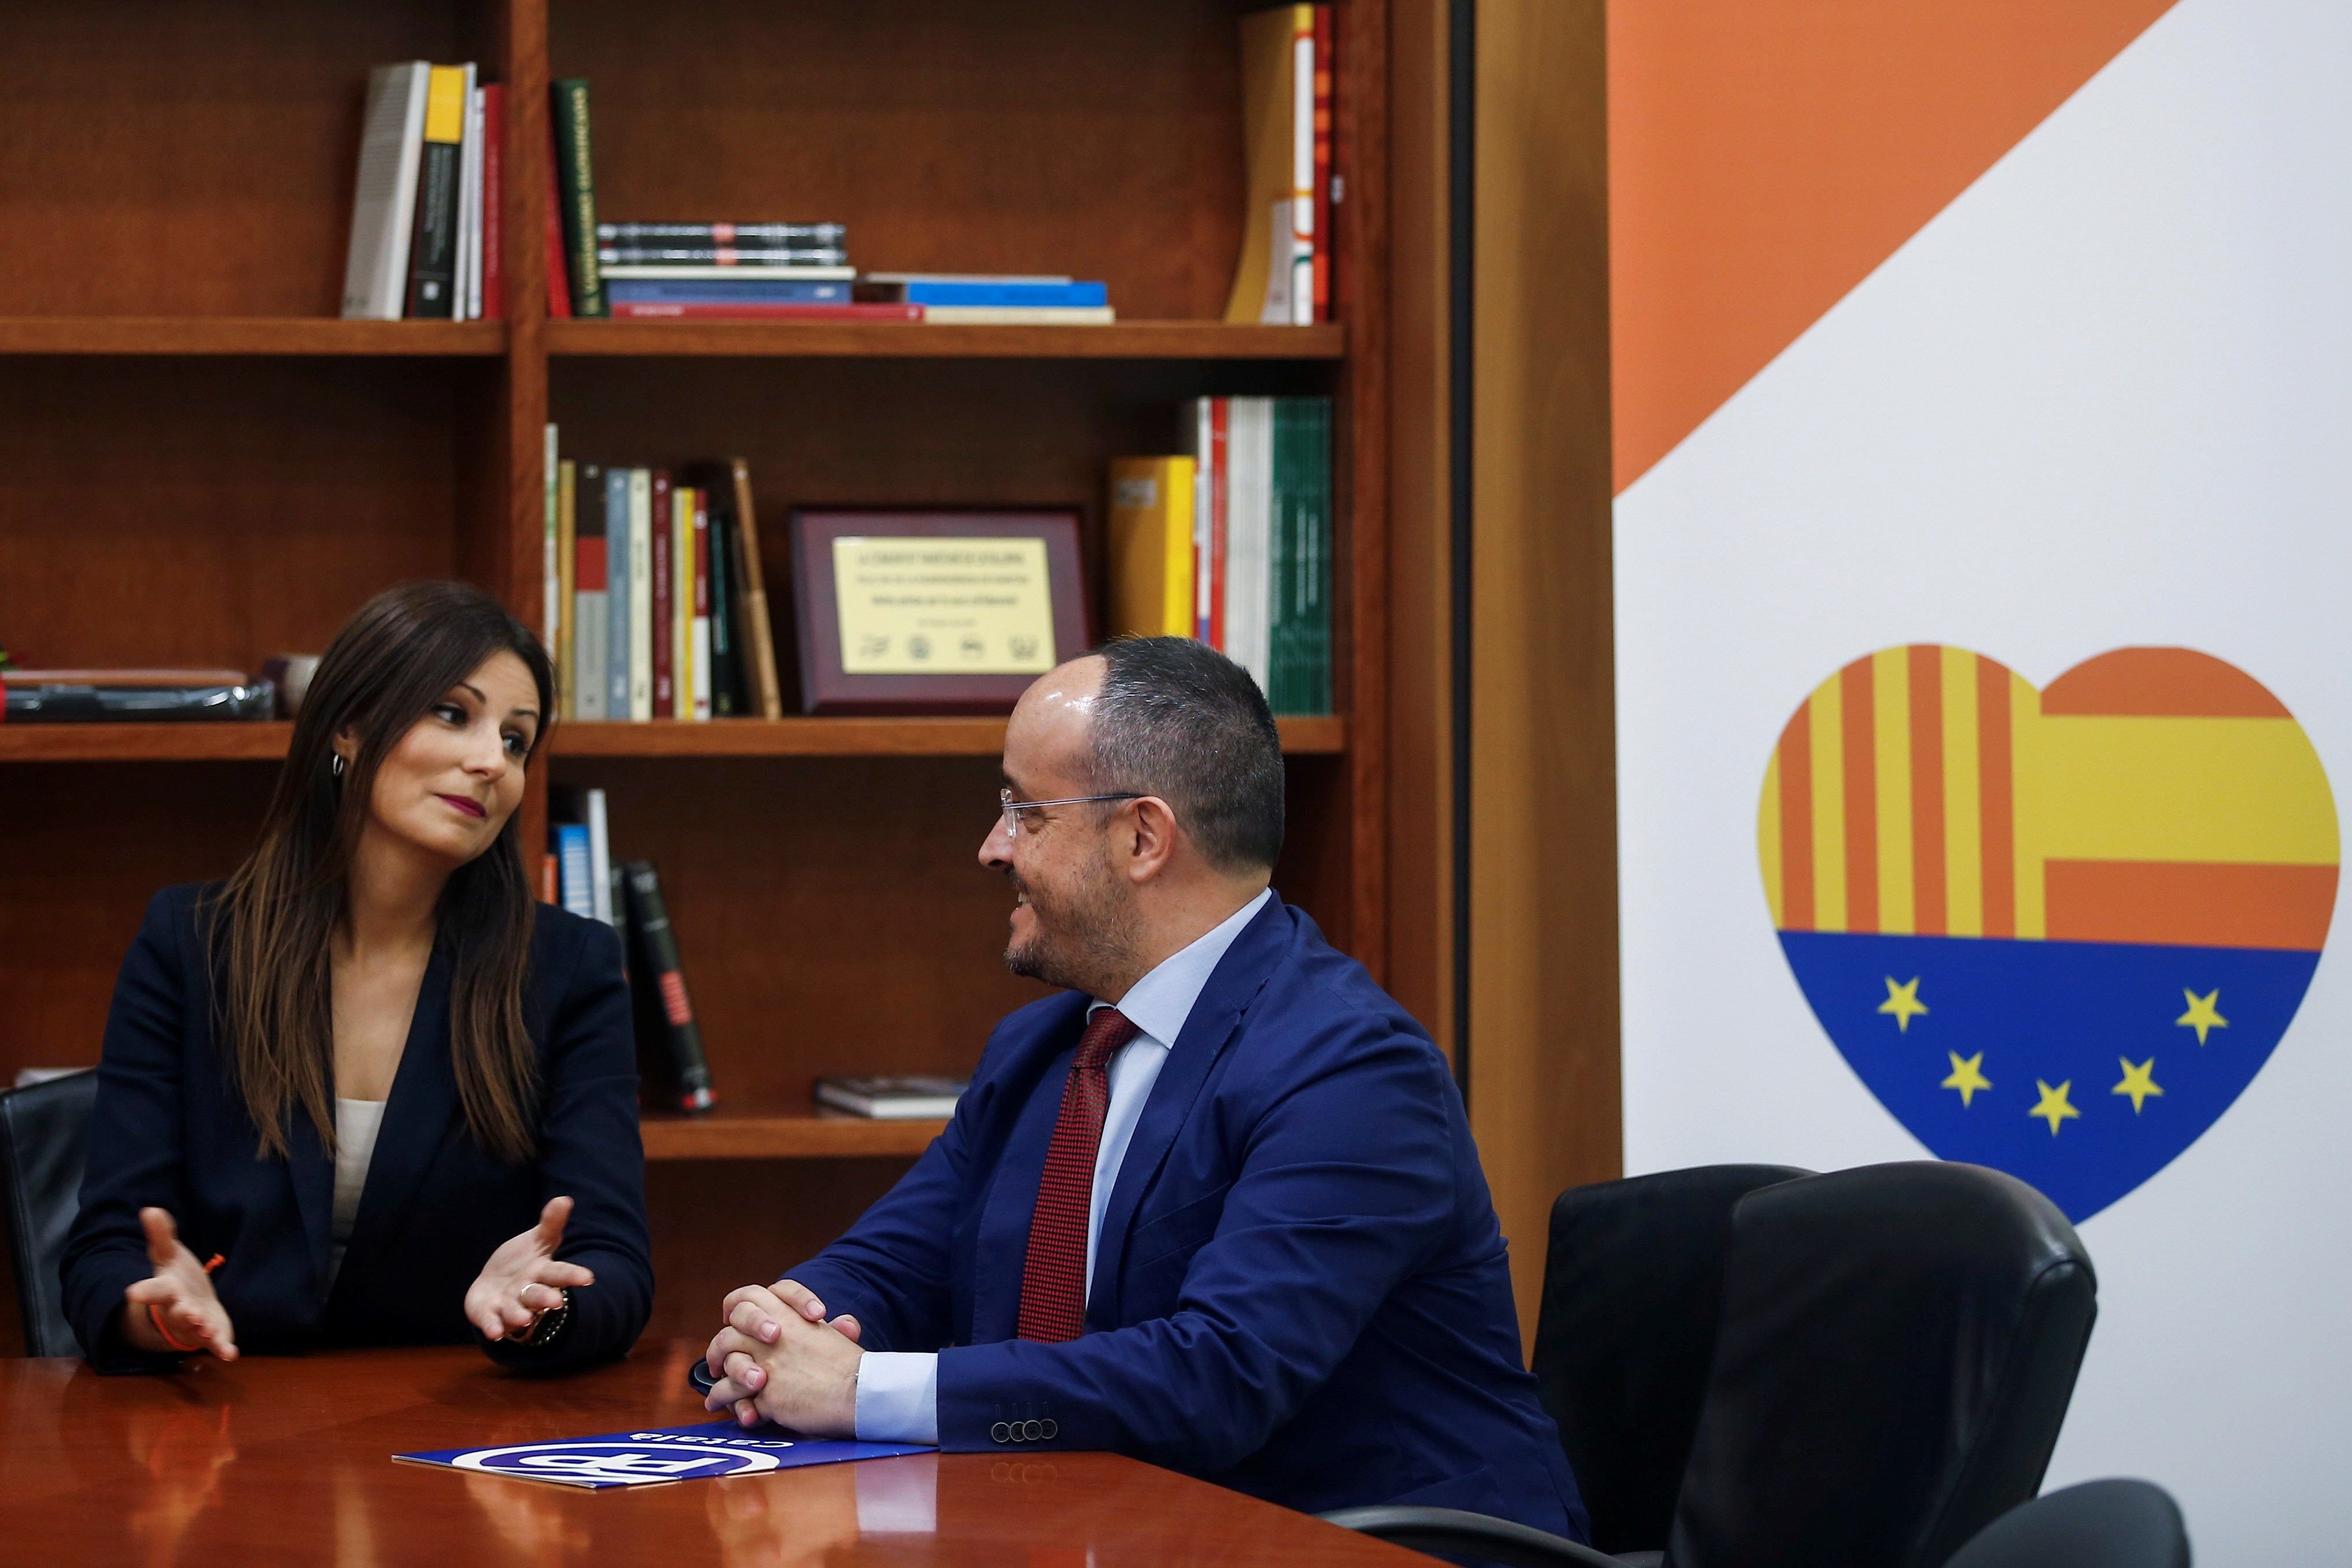 La exlíder de Cs Lorena Roldán s'afilia al PP: "Serem decisius a Catalunya"